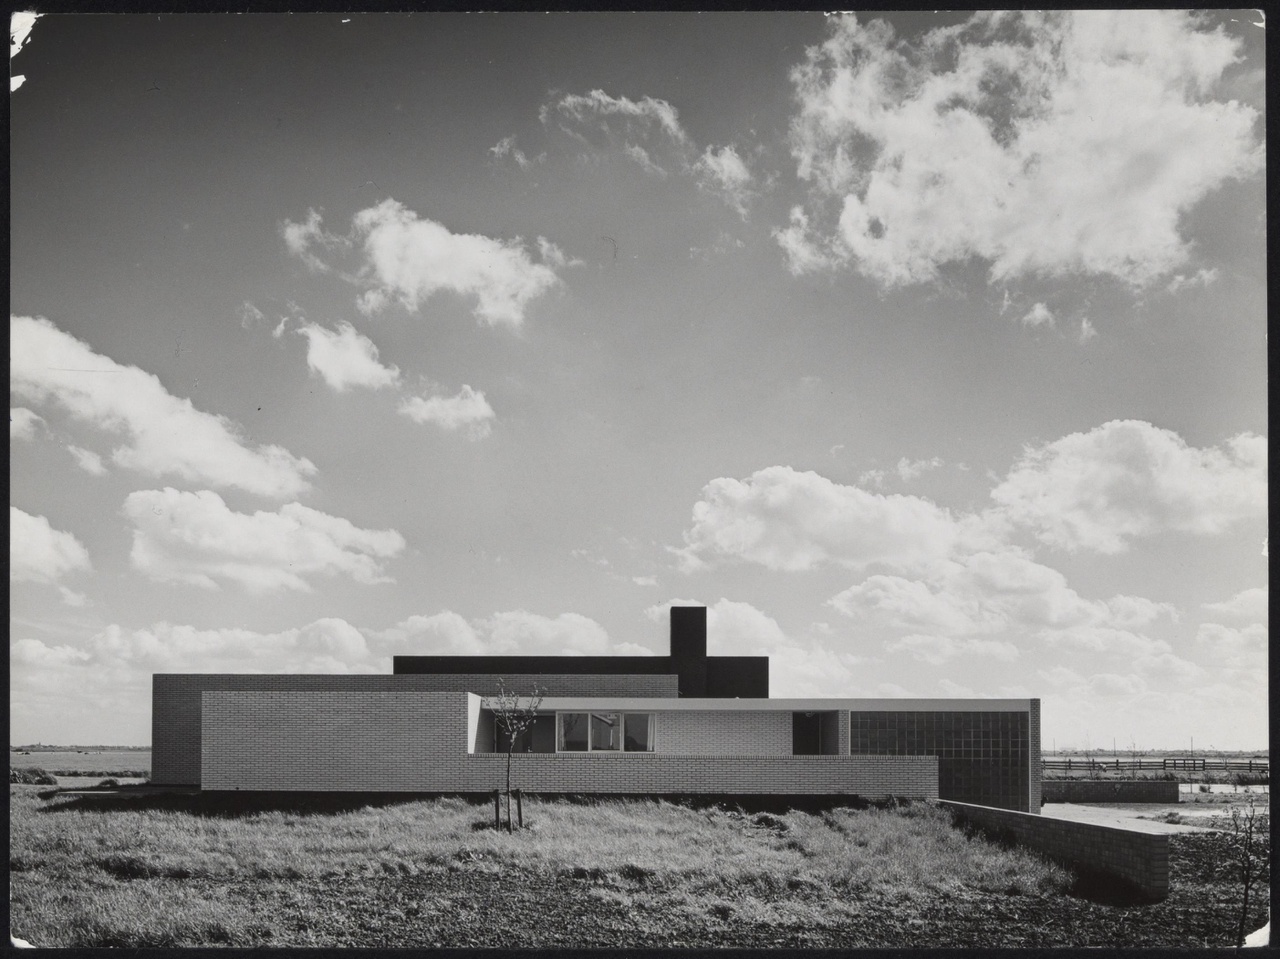 Afbeelding van woning Van den Doel, ca.1958, noordkant vanaf de weg